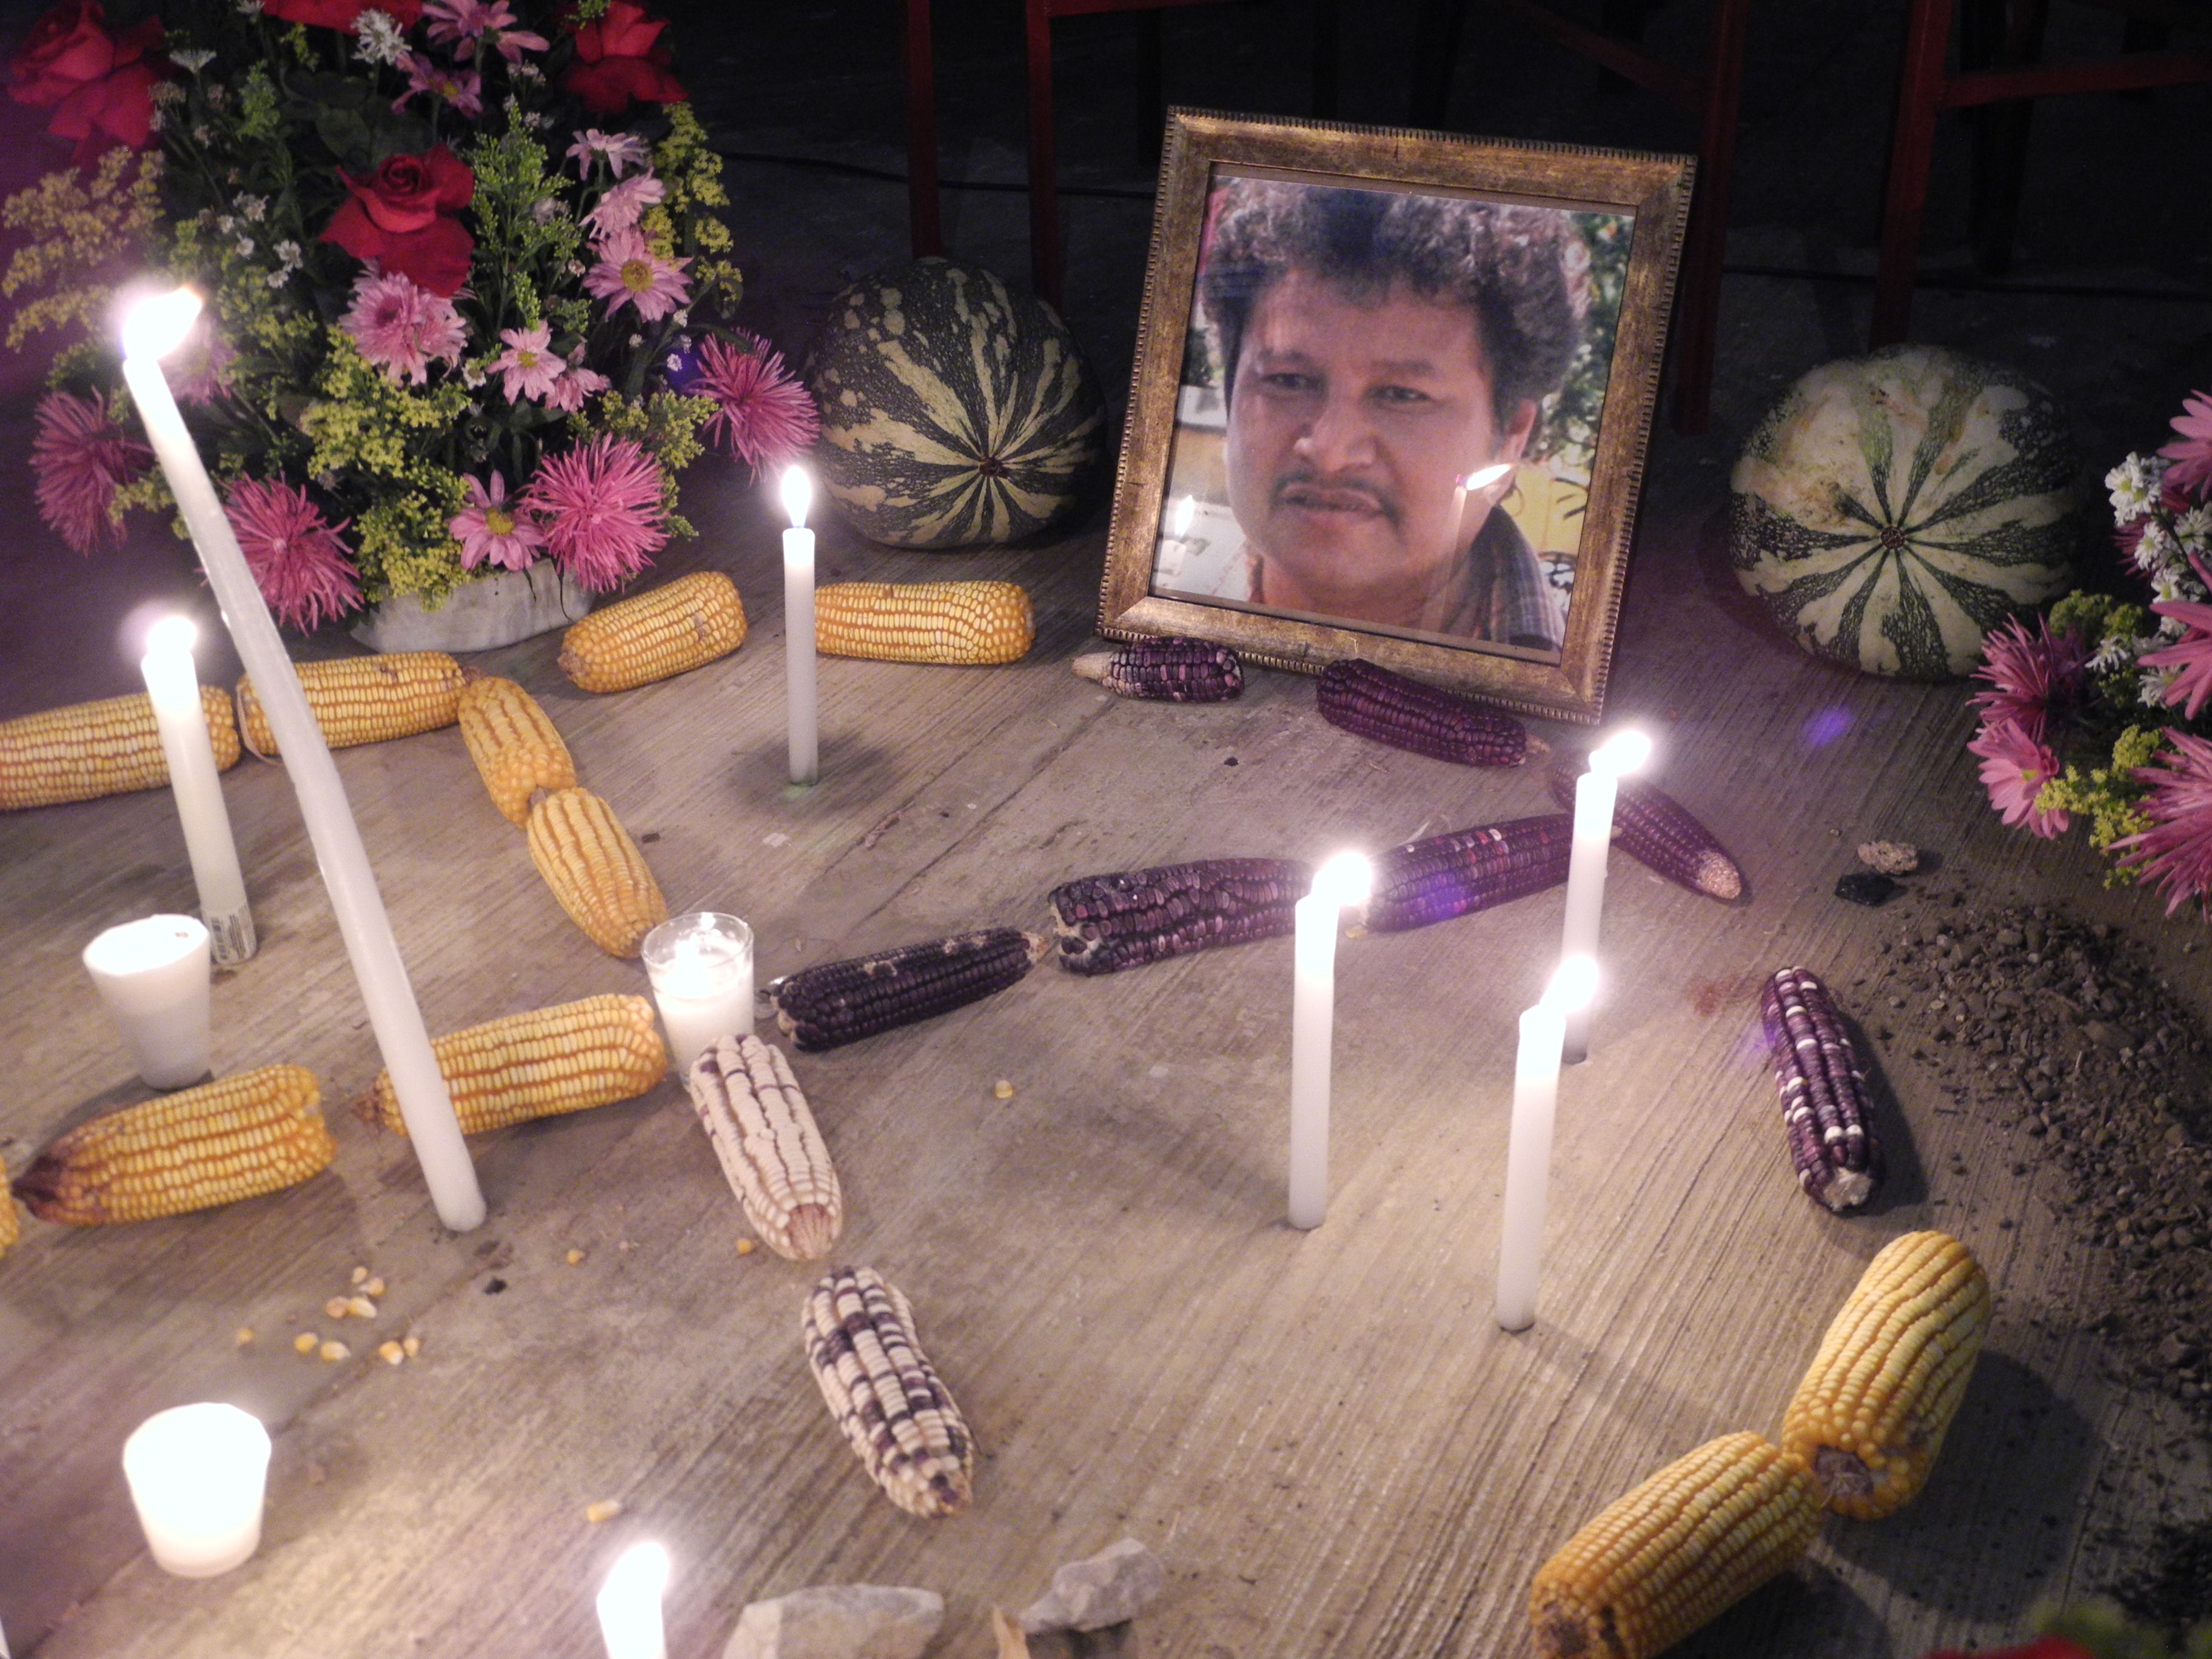 “El Gobierno mexicano se ha mostrado indolente a nuestro derecho a saber la verdad y niega la procuración de justicia”: hijo de ambientalista asesinado Mariano Abarca